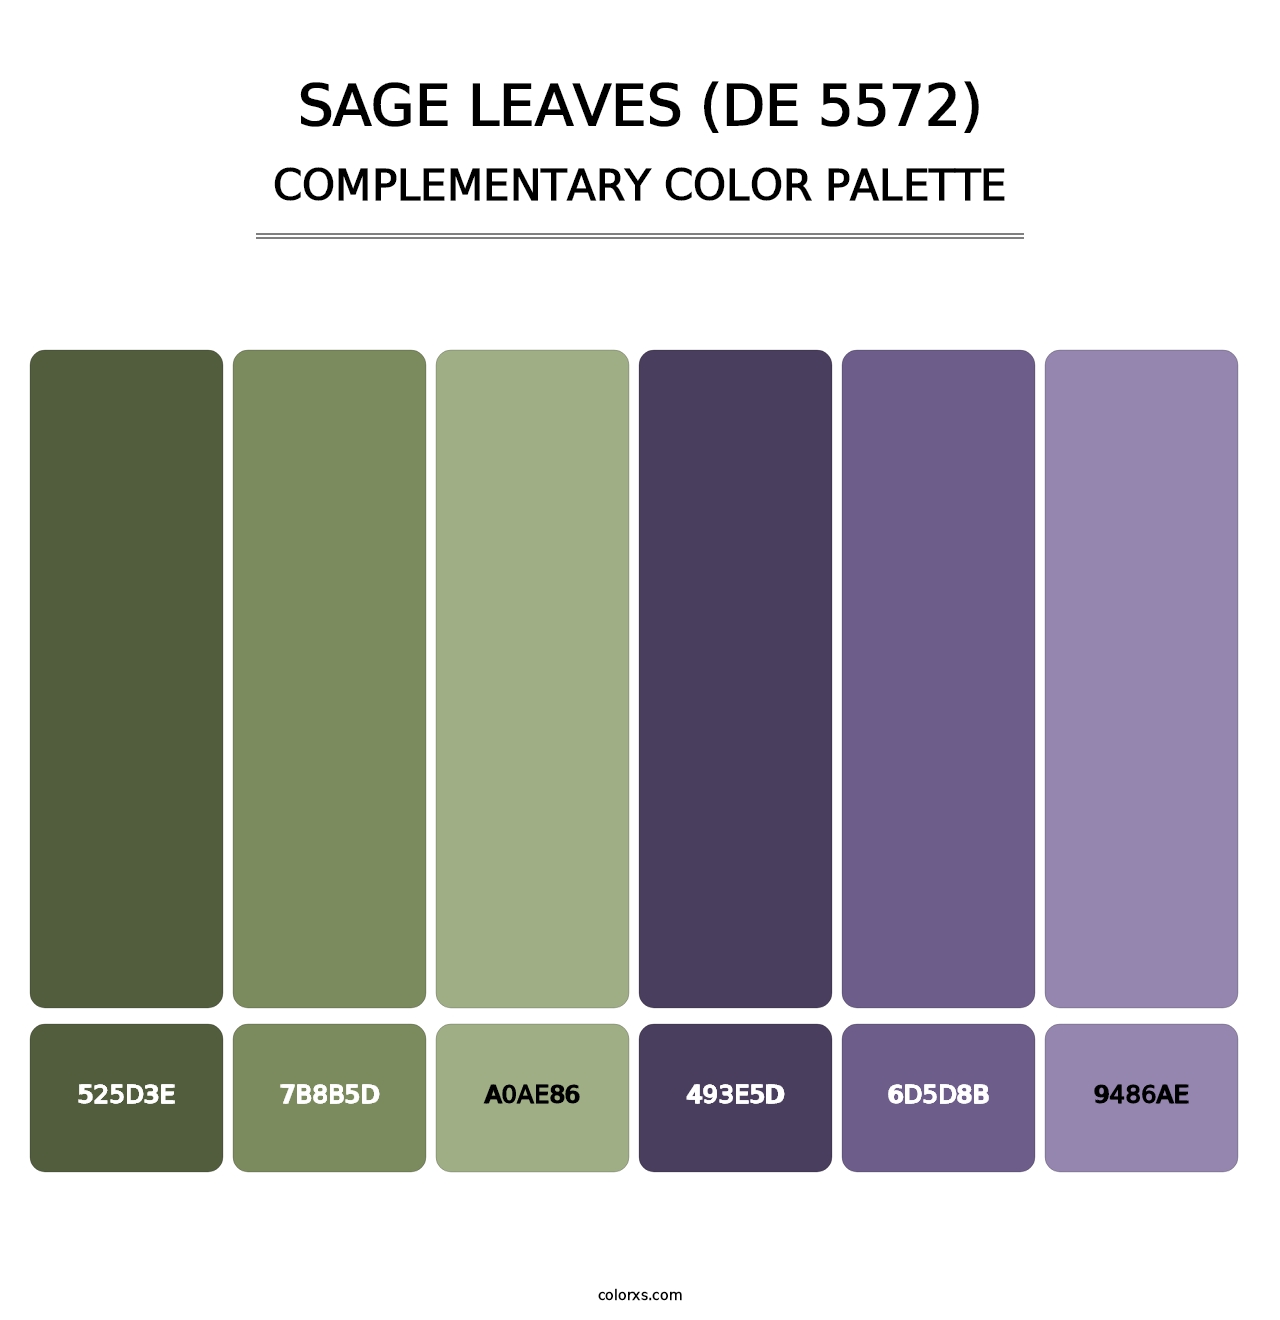 Sage Leaves (DE 5572) - Complementary Color Palette